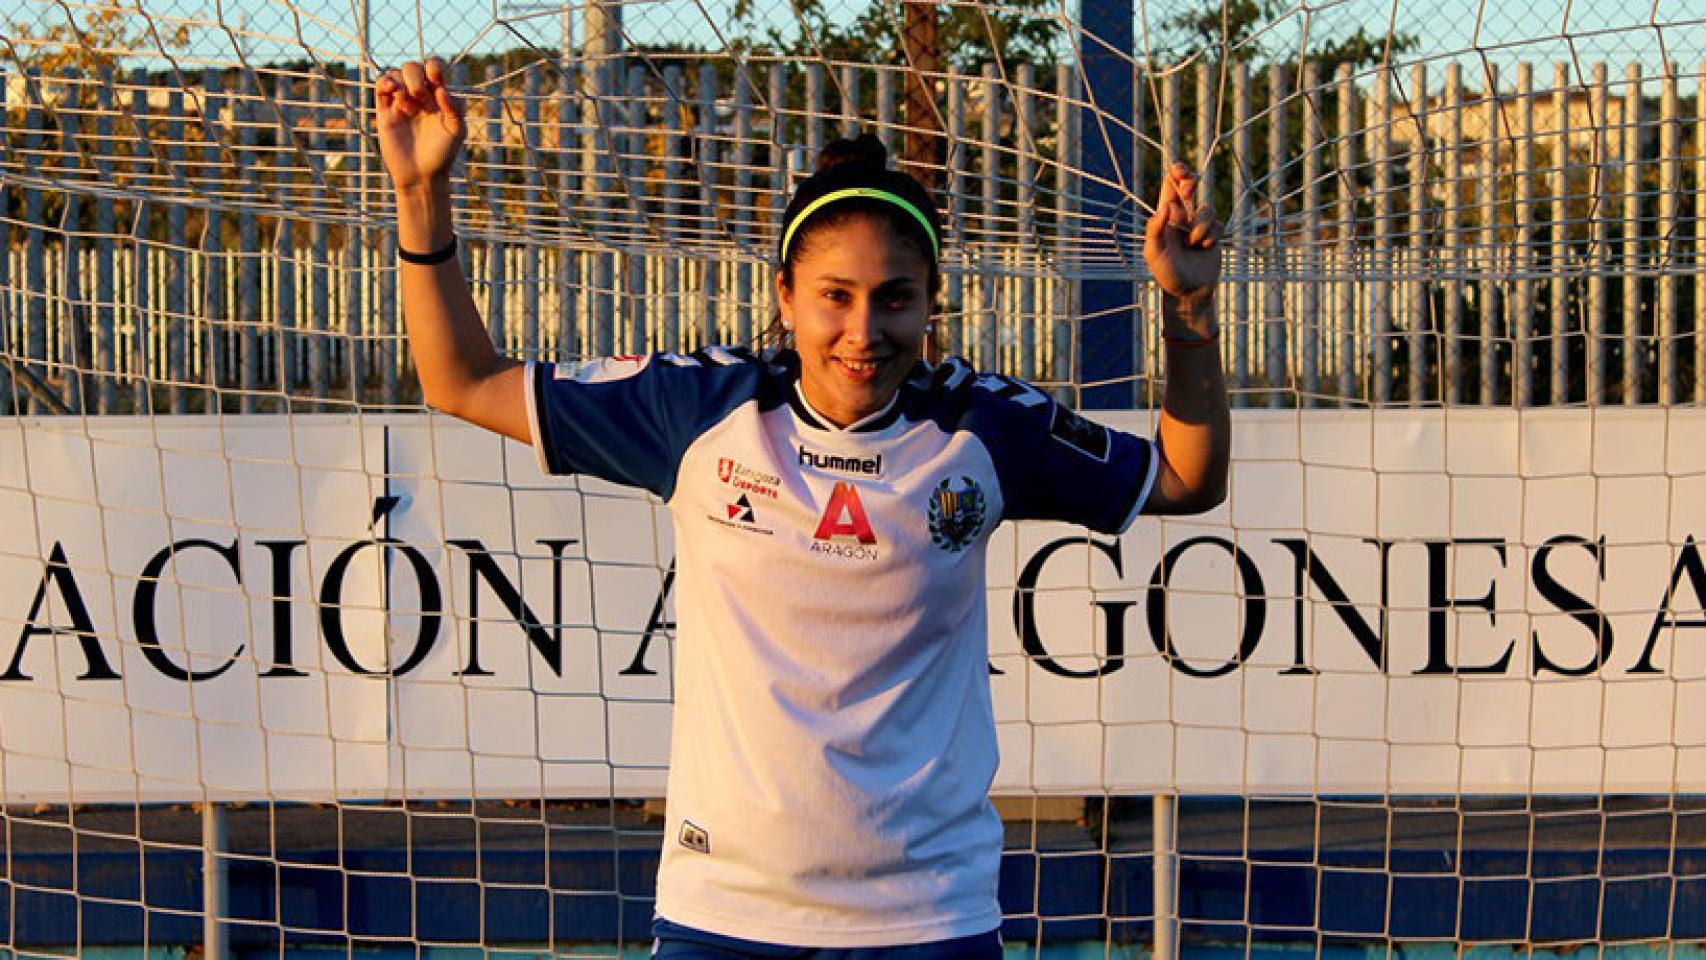 Gloria Villamayor, jugadora del Zaragoza Femenino. Foto: Twitter (@ZaragozaCFF)